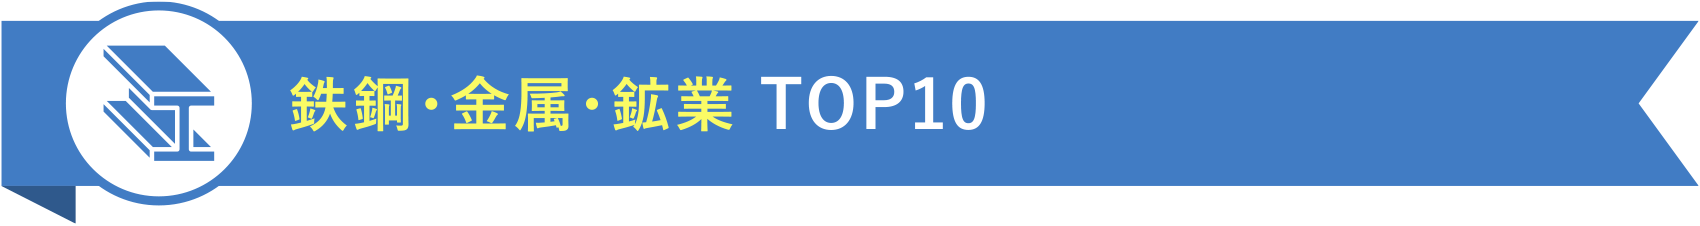 鉄鋼・金属・鉱業 TOP10